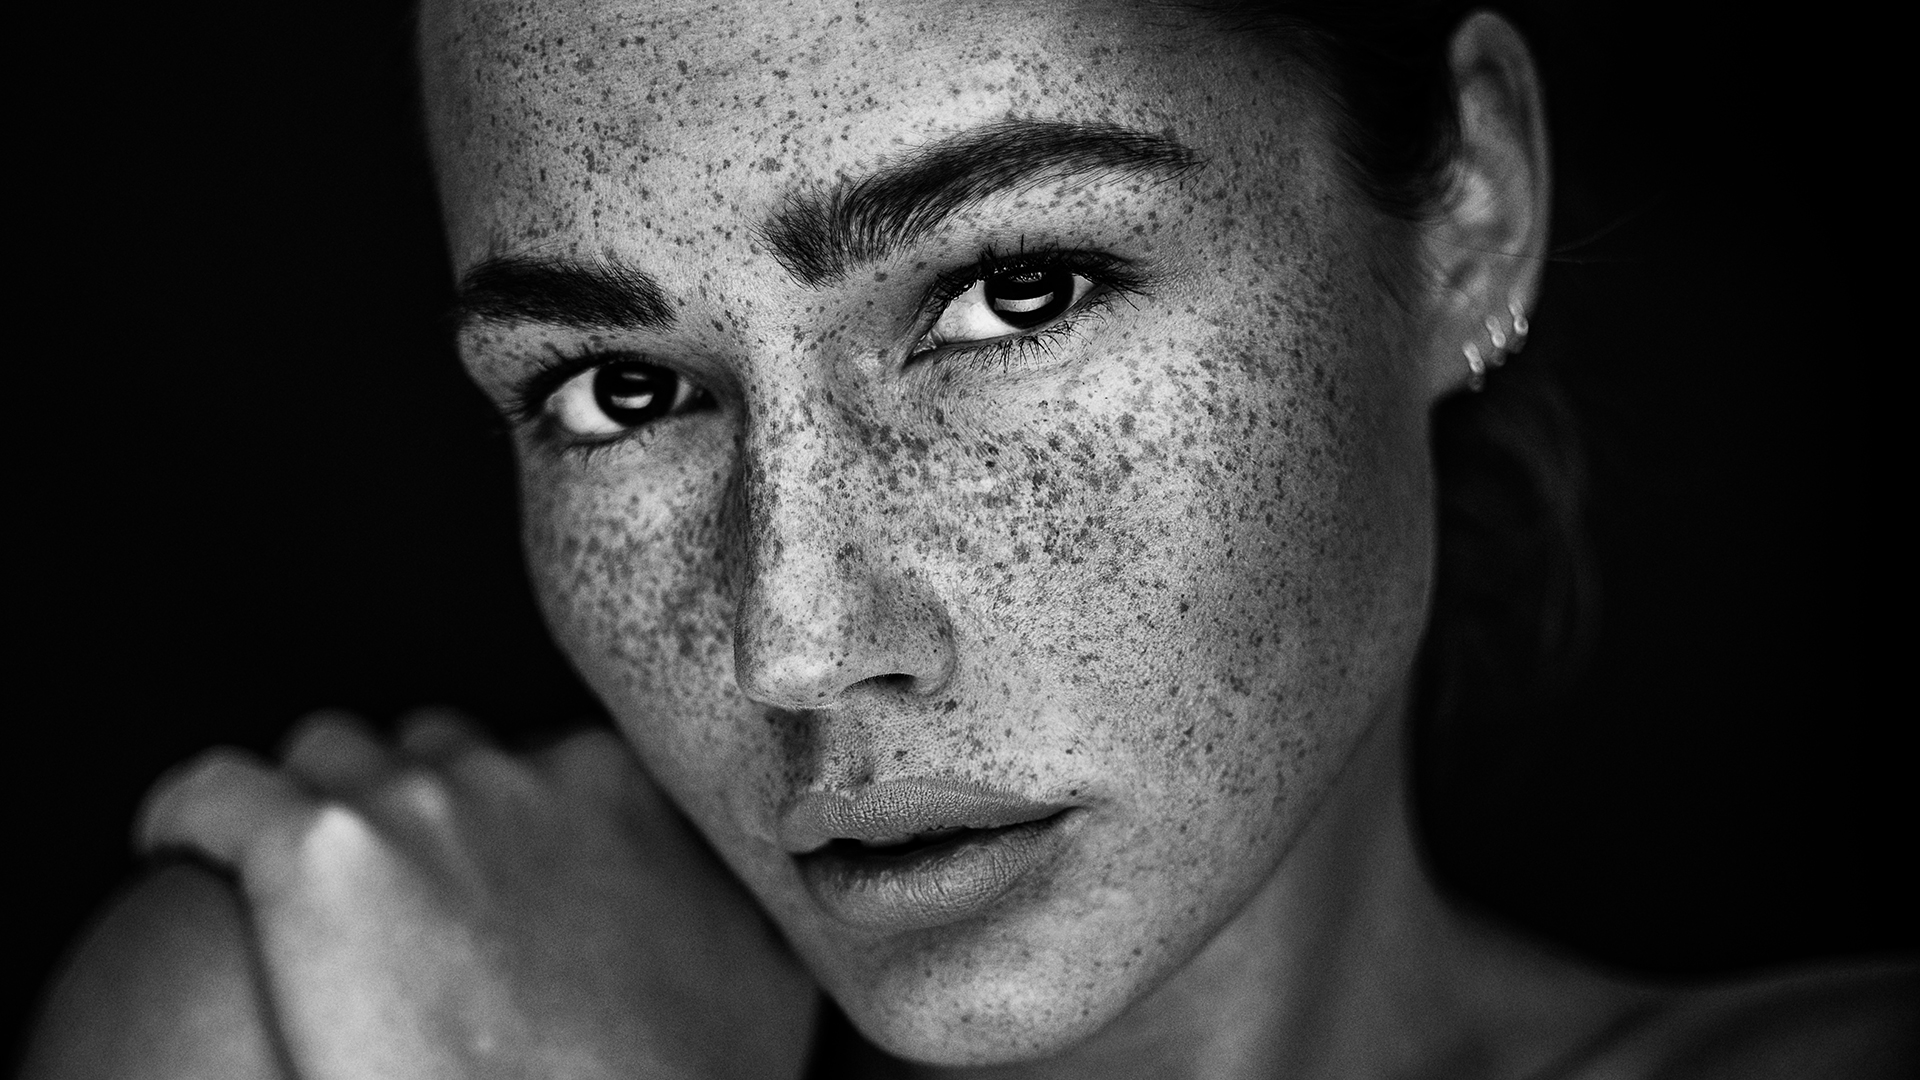 People 1920x1080 women model looking at viewer face monochrome freckles depth of field piercing Martin Krystynek